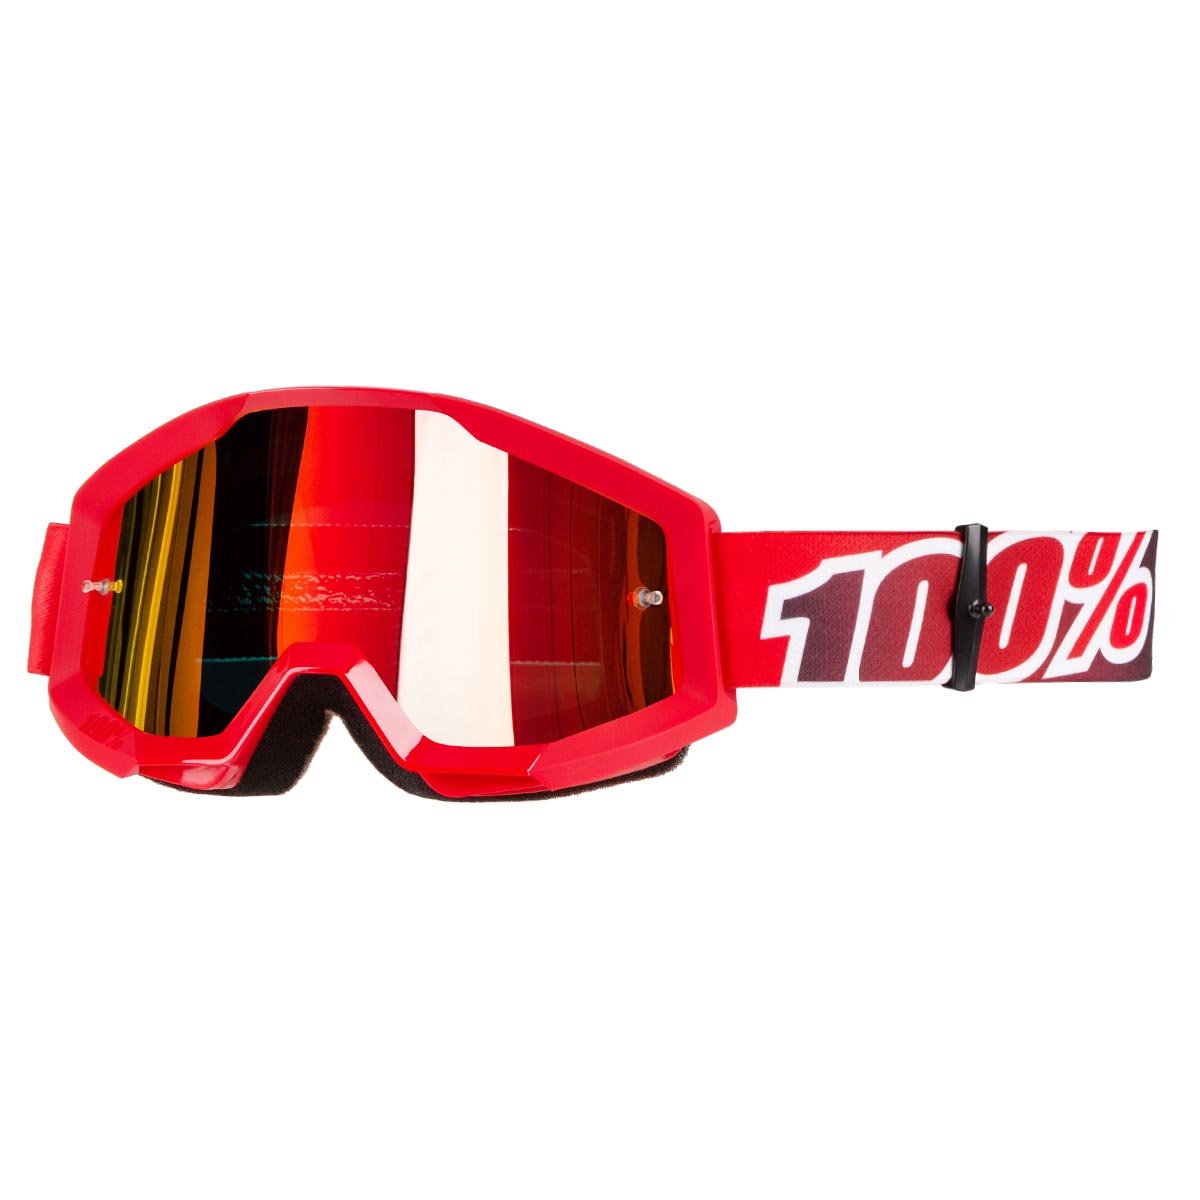 100% Crossbrille Strata Fire Red - Rot verspiegelt Anti-Fog